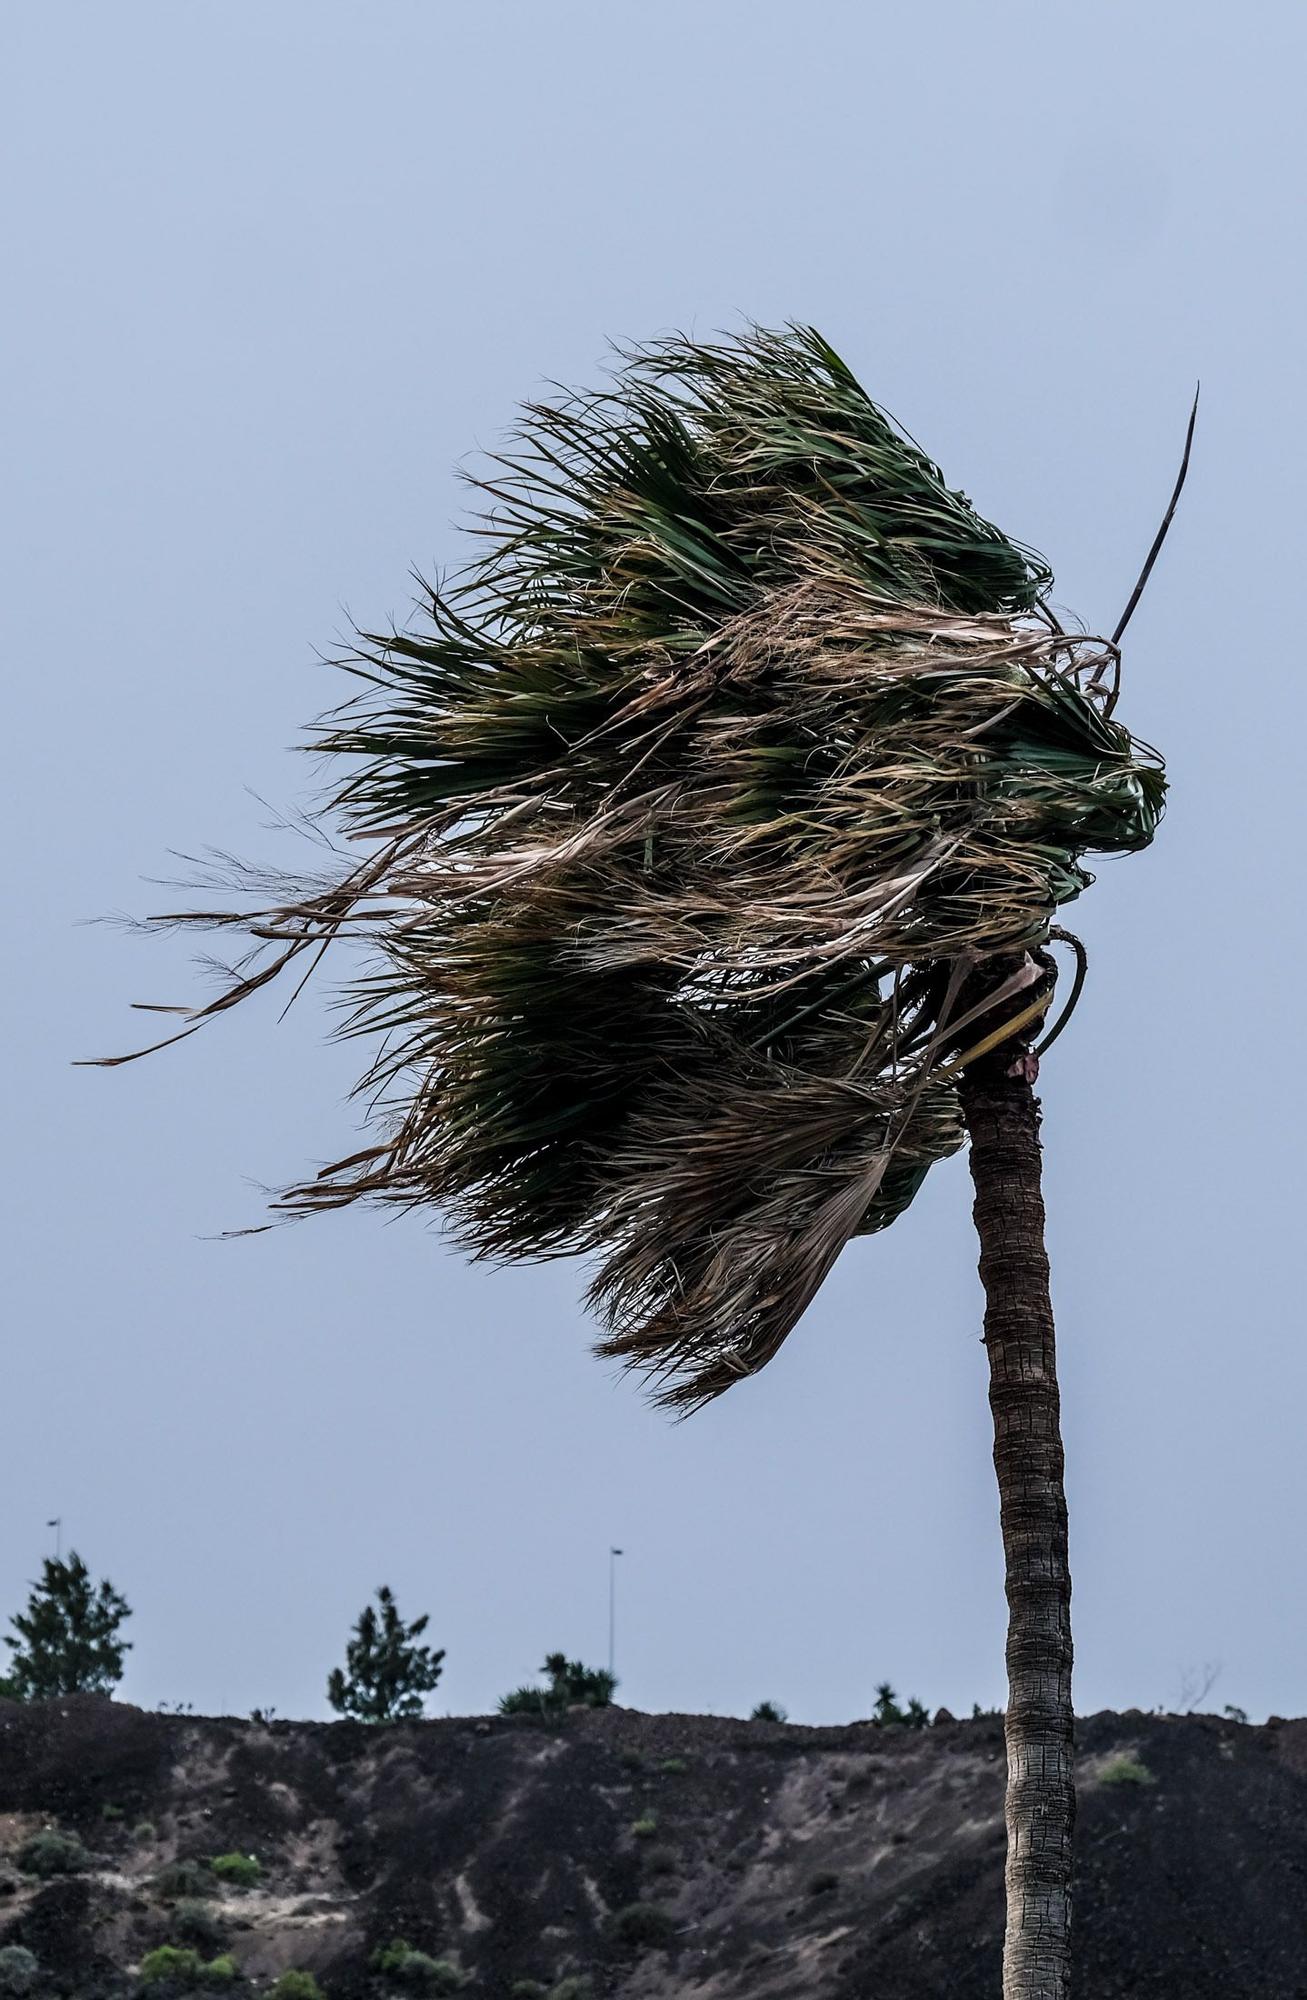 La borrasca Celia deja un temporal de viento y mar en Gran Canaria (14/02/2022)